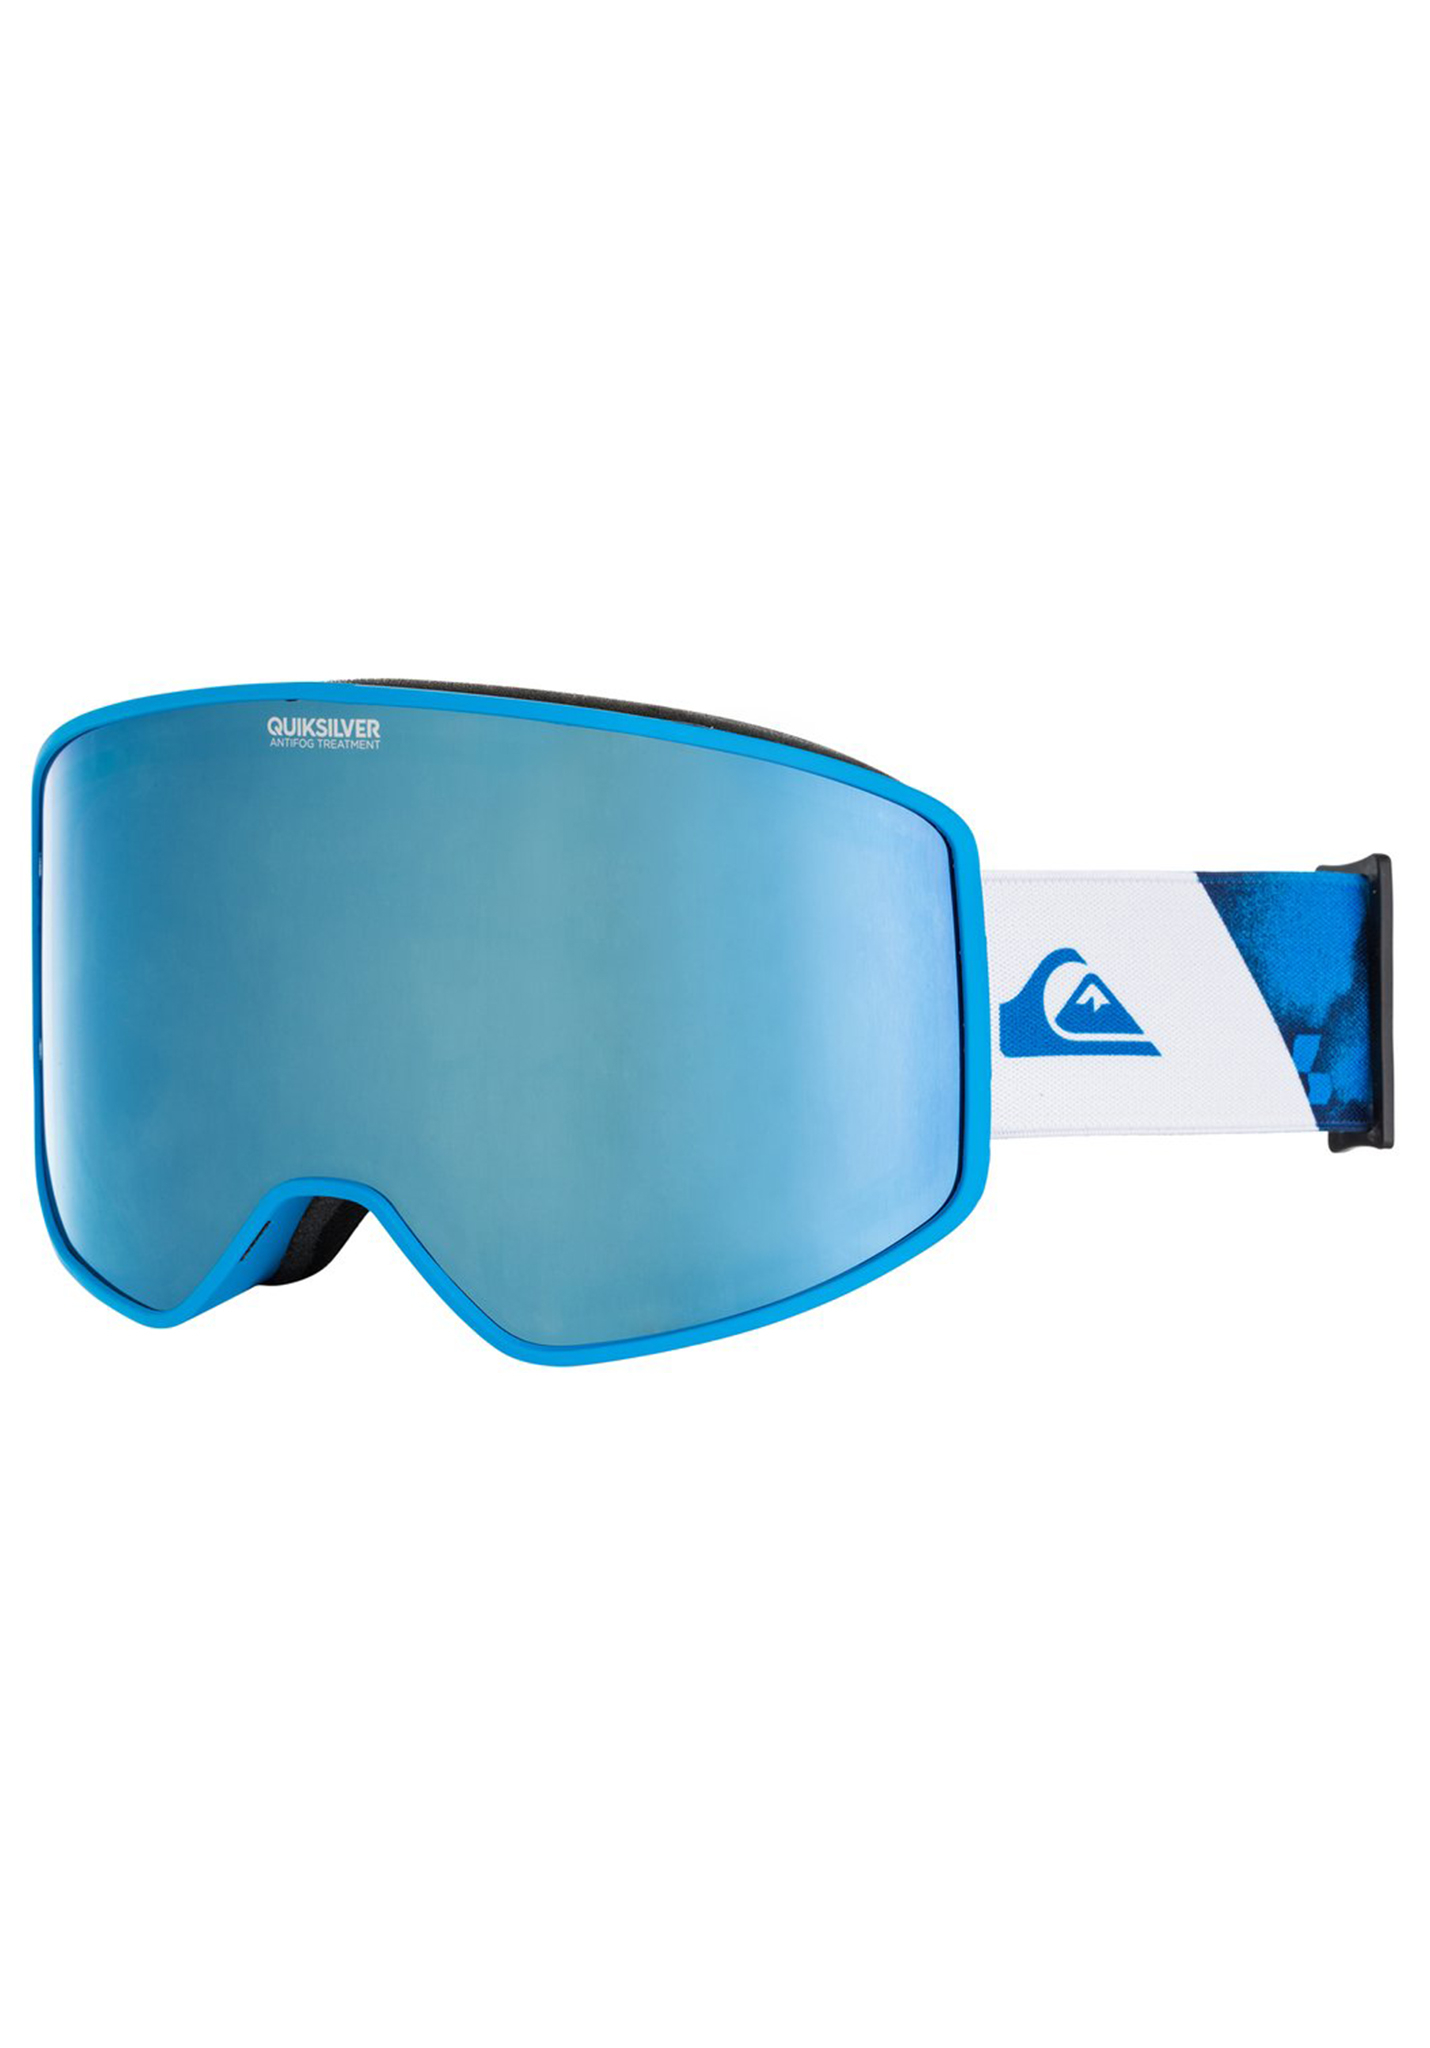 Quiksilver Storm Sportline Snowboardbrillen brillantblau radpack One Size